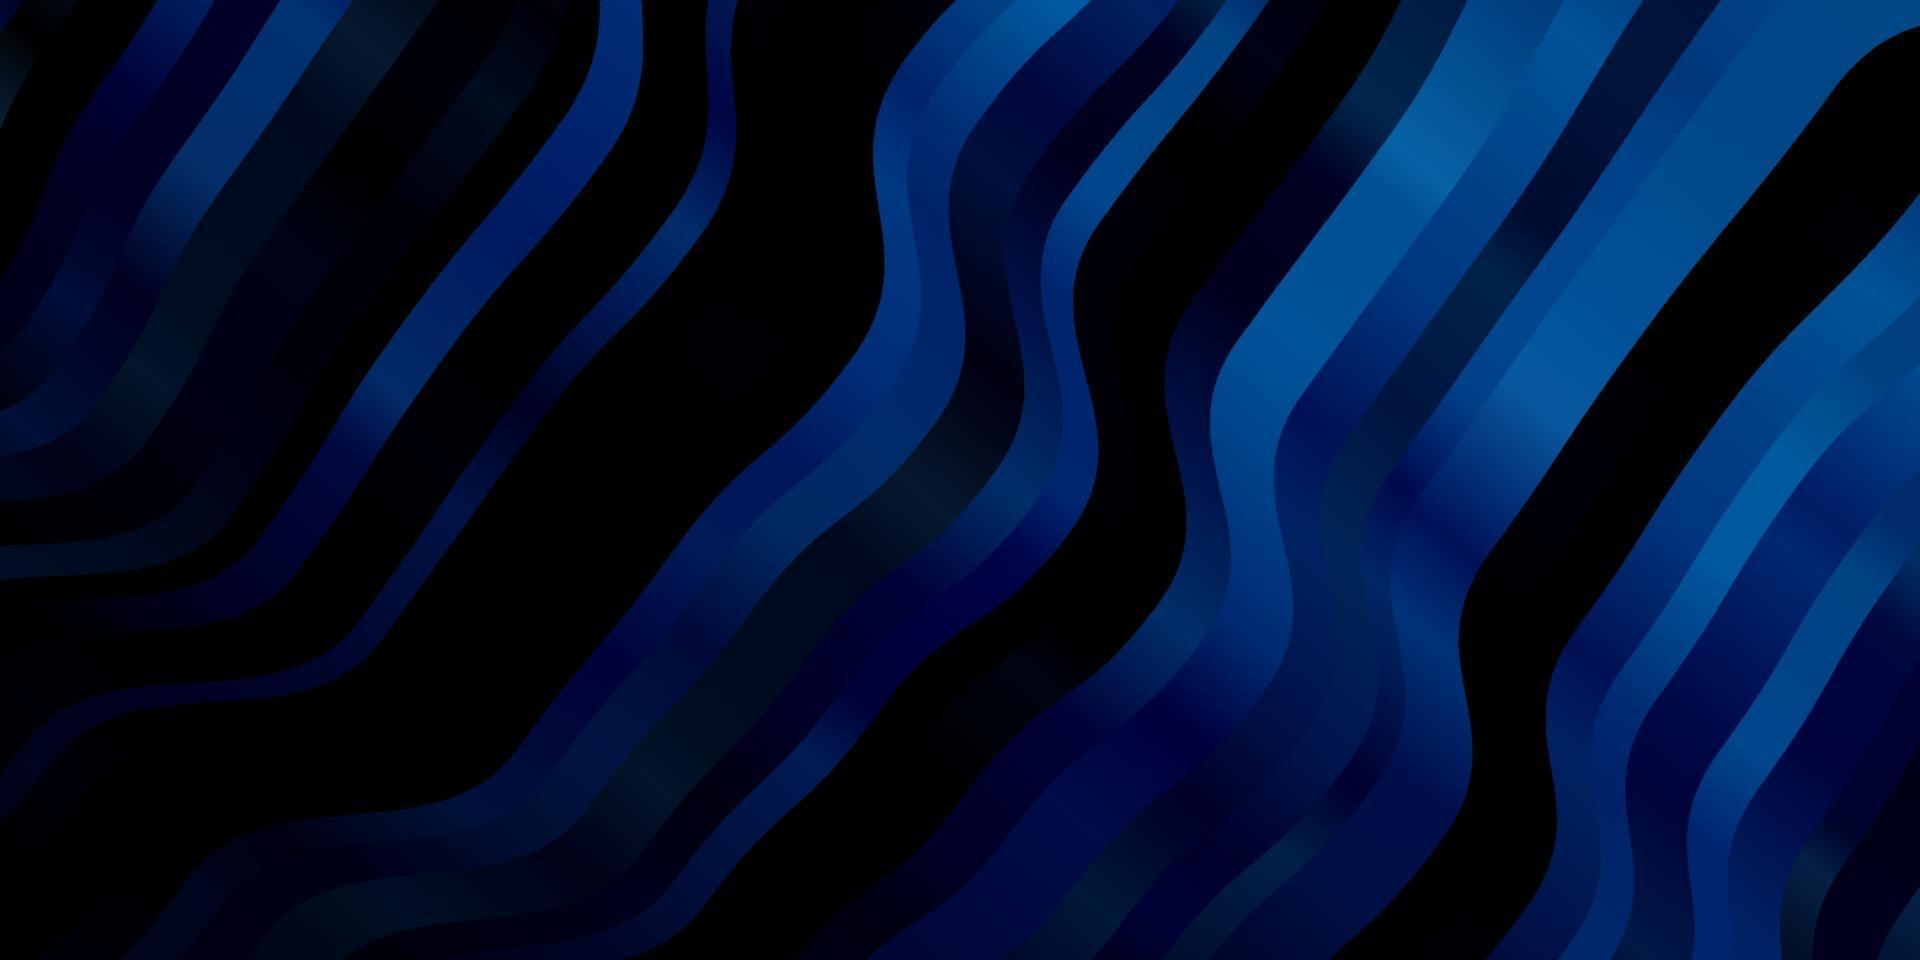 patrón de vector azul oscuro con líneas curvas.